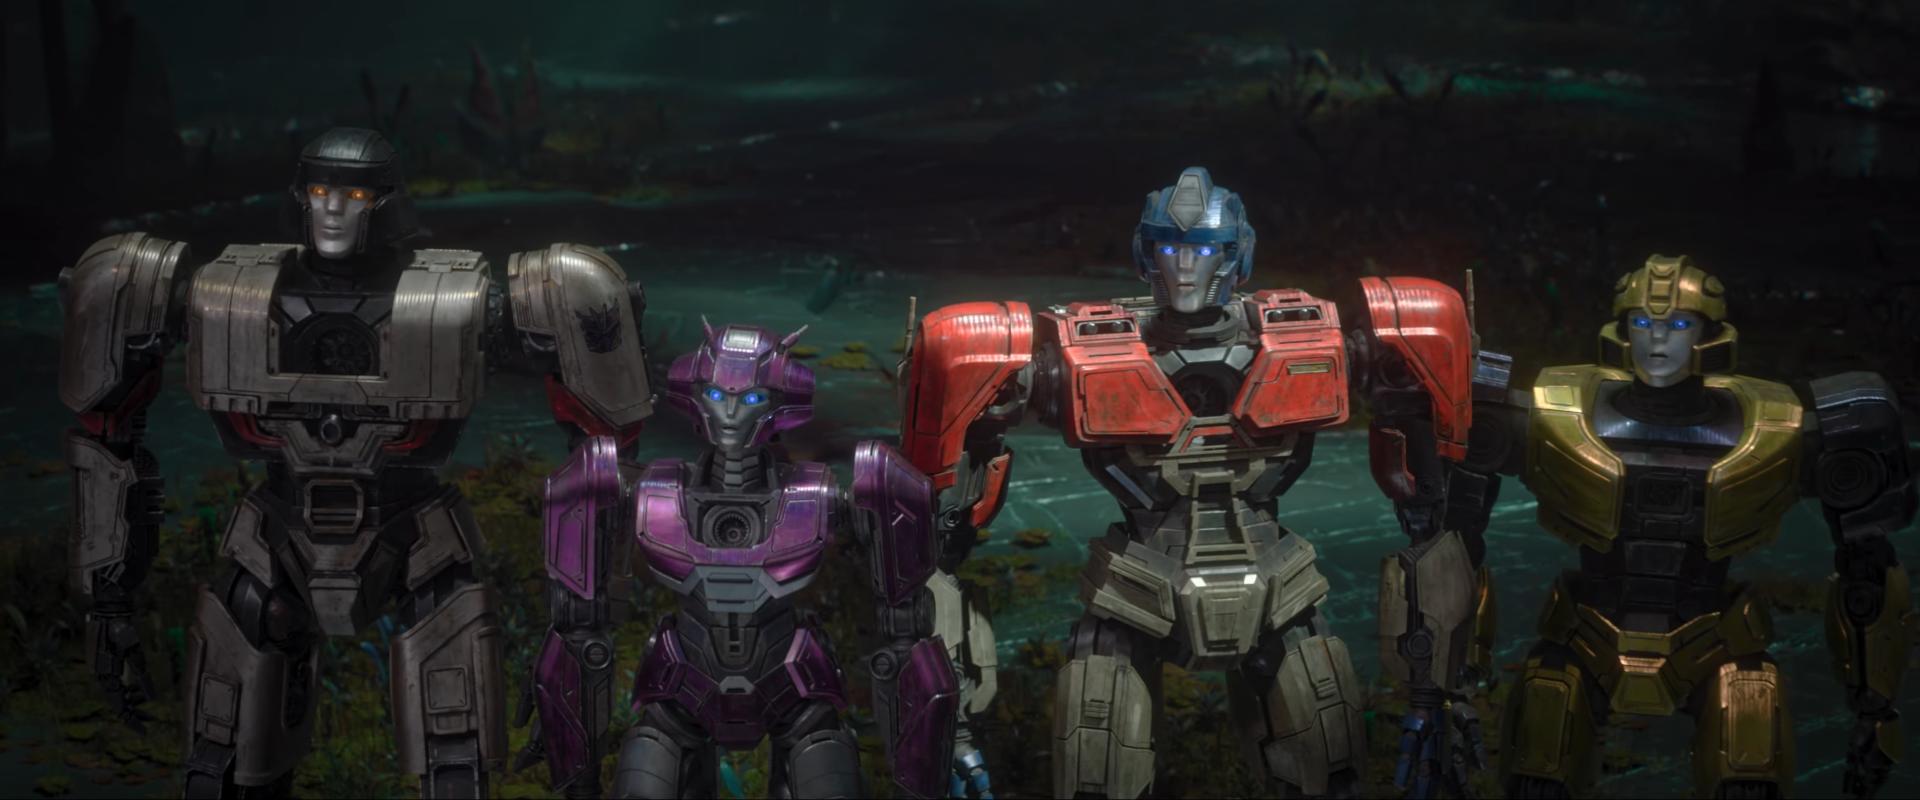 Az űrben is bemutatták az új Transformers film első előzetesét